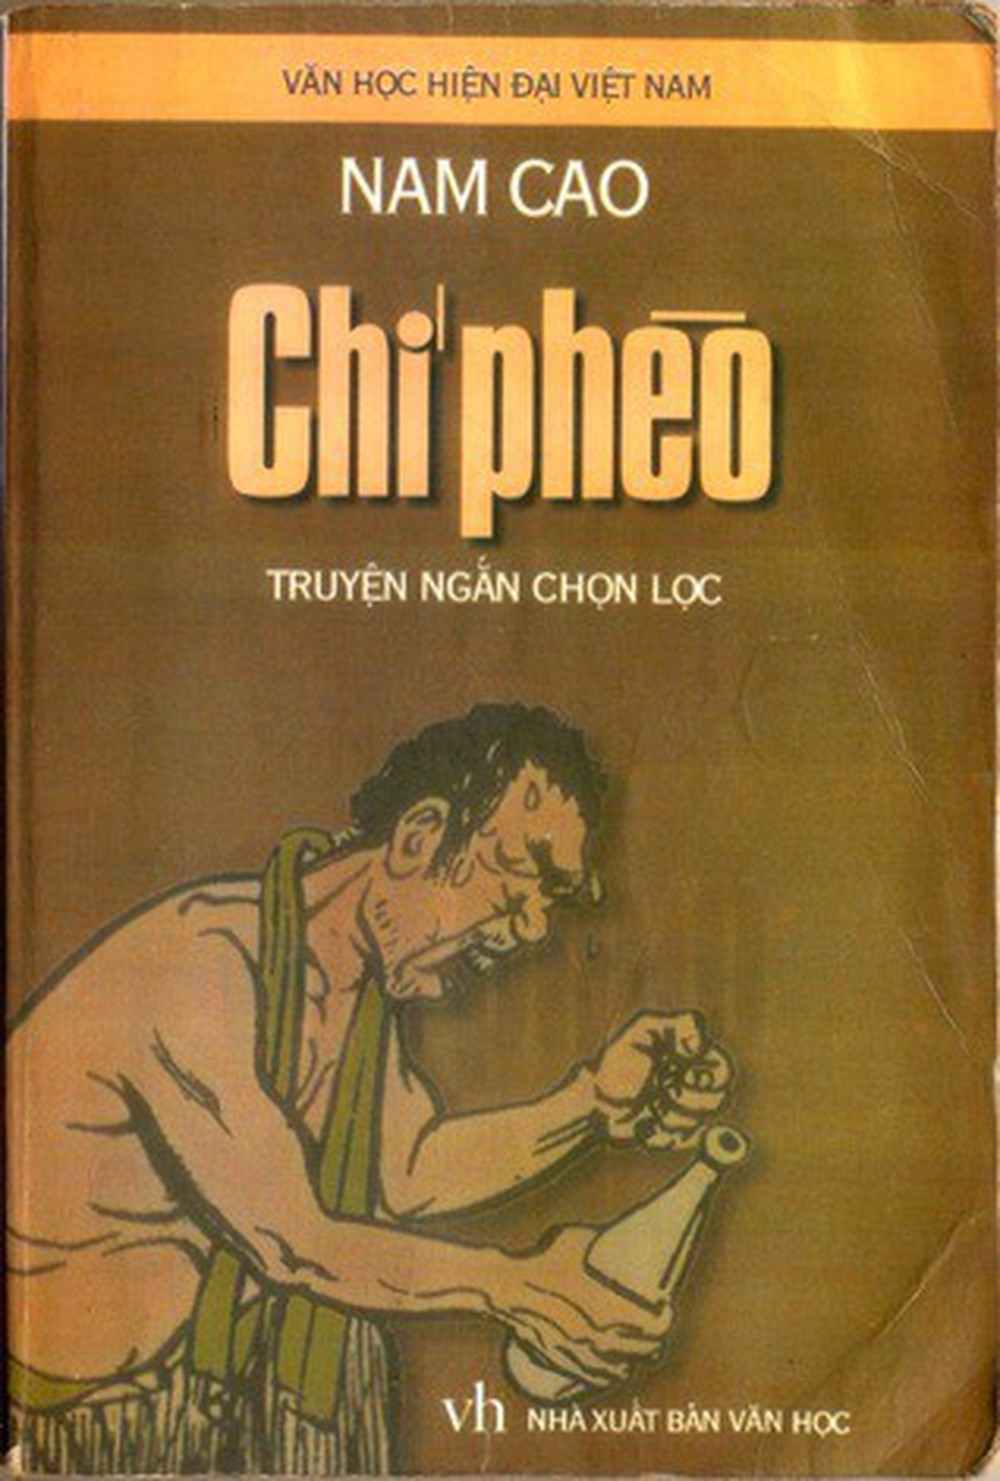 Tác phẩm Chí Phèo trong tuyển tập truyện ngắn nổi tiếng của Nam Cao